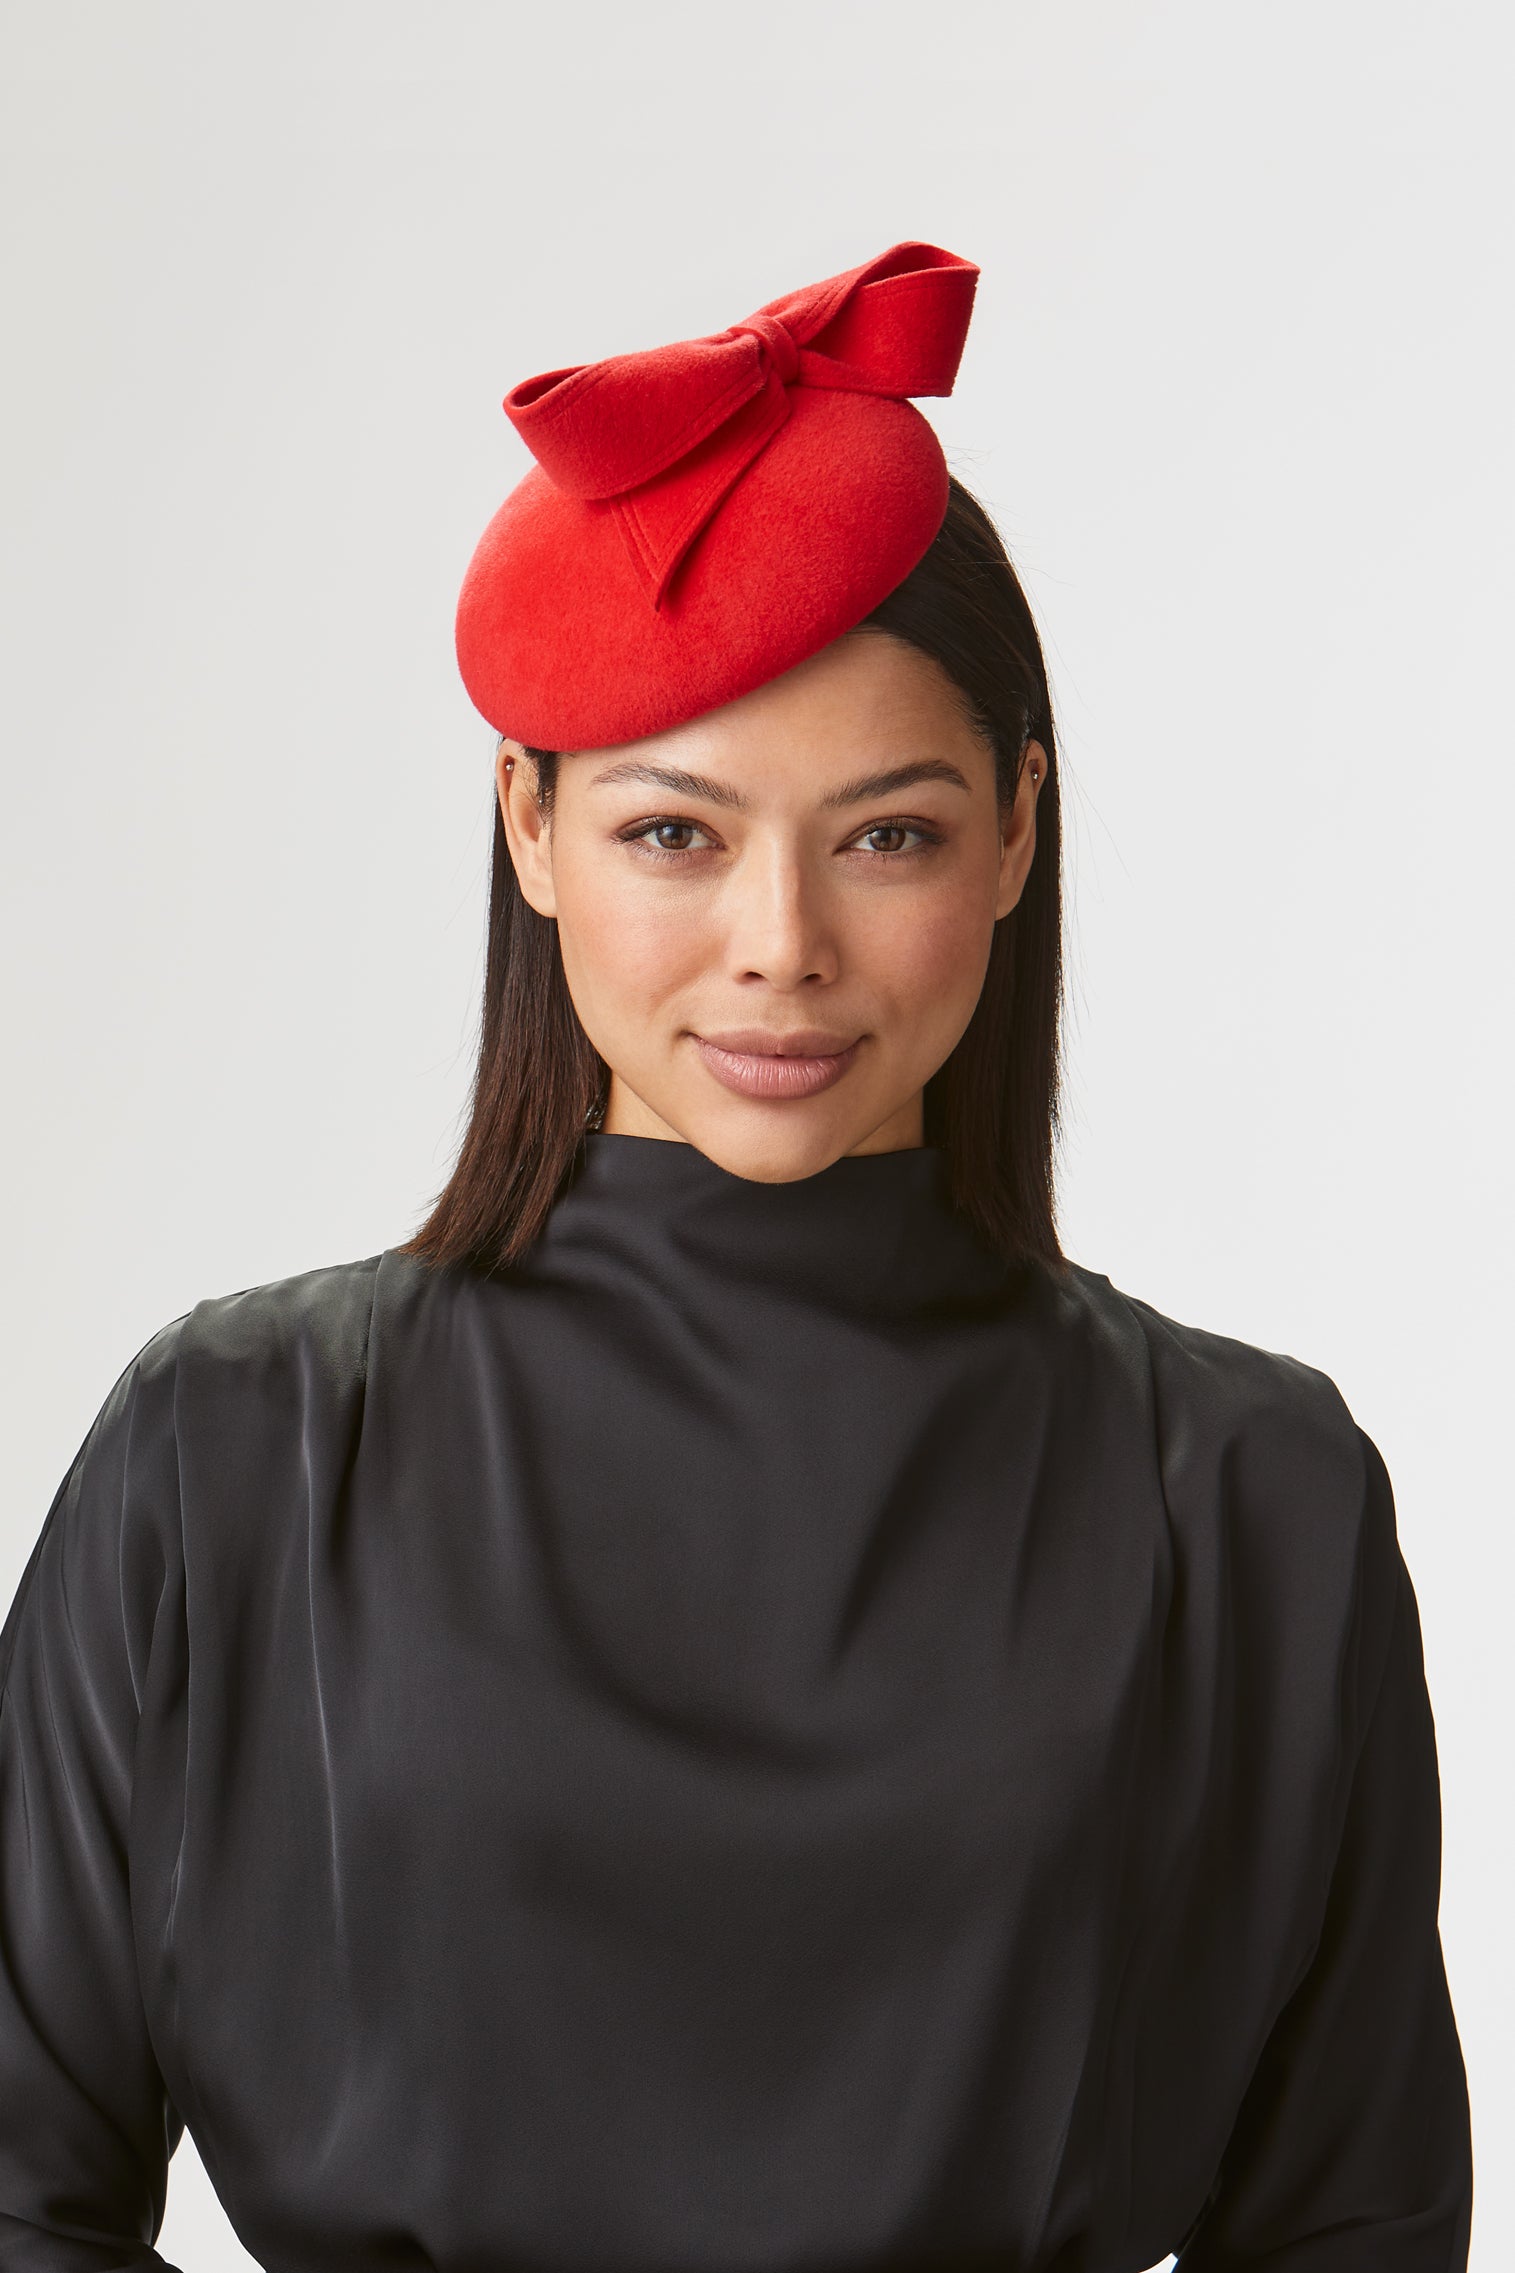 Lana Red Button Hat - Women’s Hats - Lock & Co. Hatters London UK